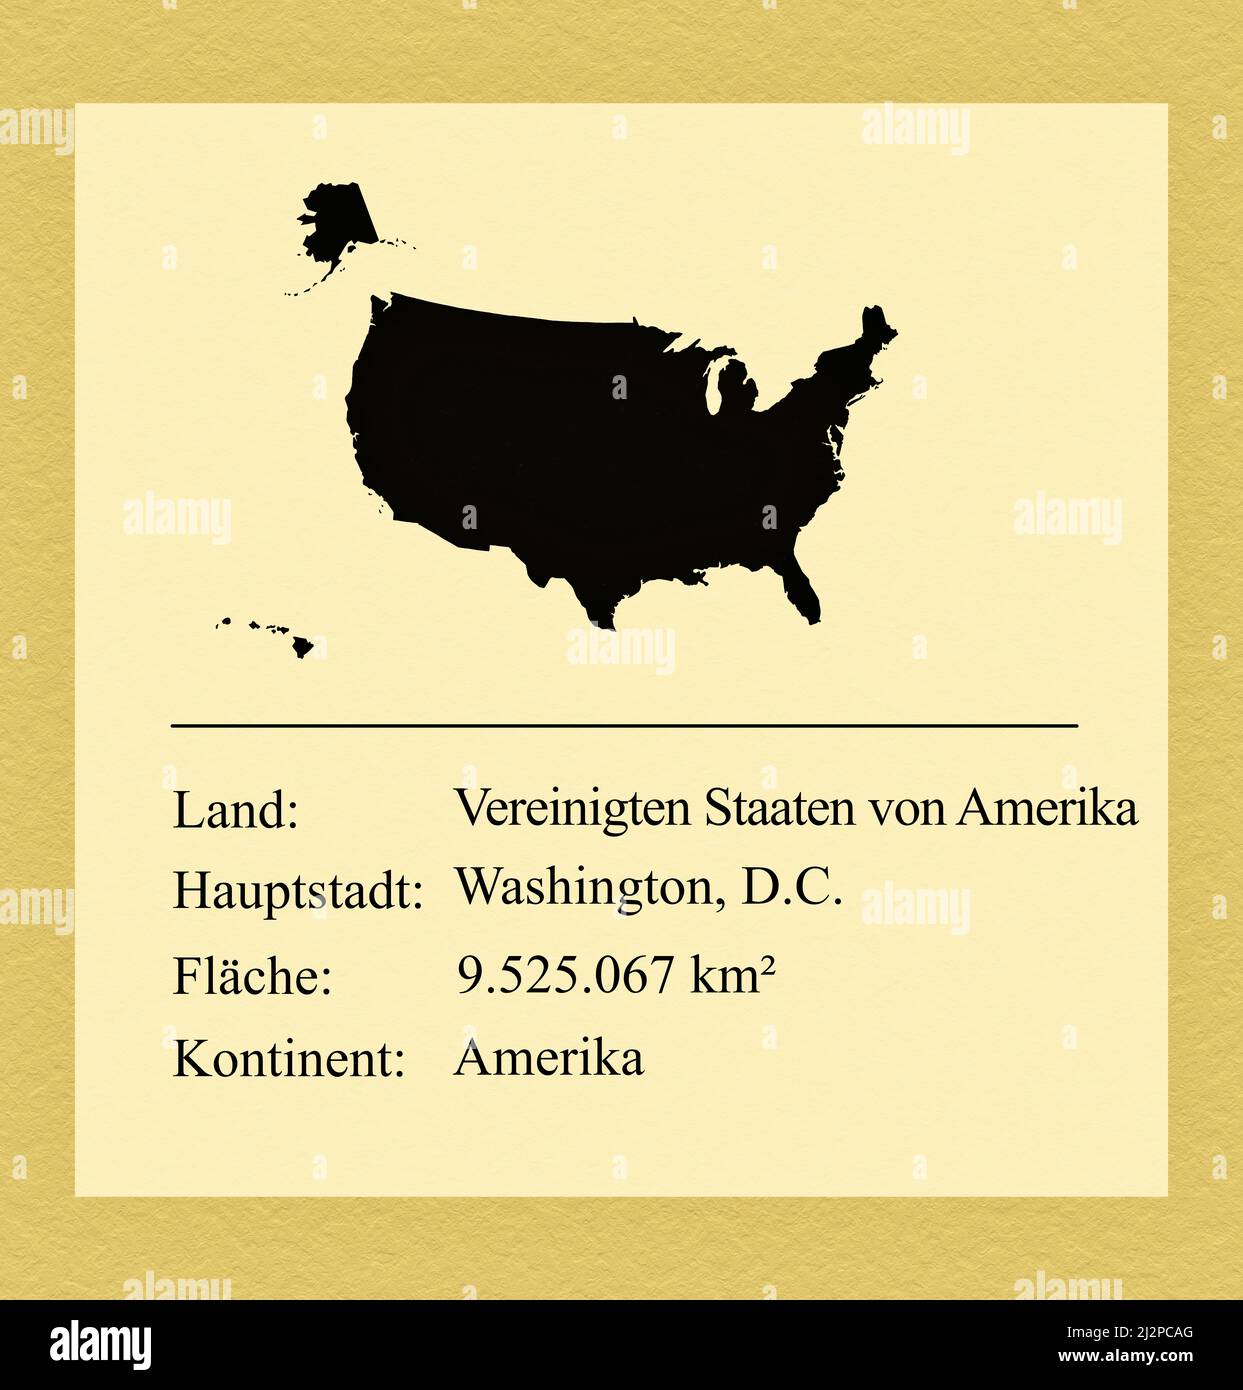 Umrisse der Vereinigten Staaten von Amerika, darunter ein kleiner Steckbrief mit Ländernamen, Hauptstadt, Fläche und Kontinent Foto de stock